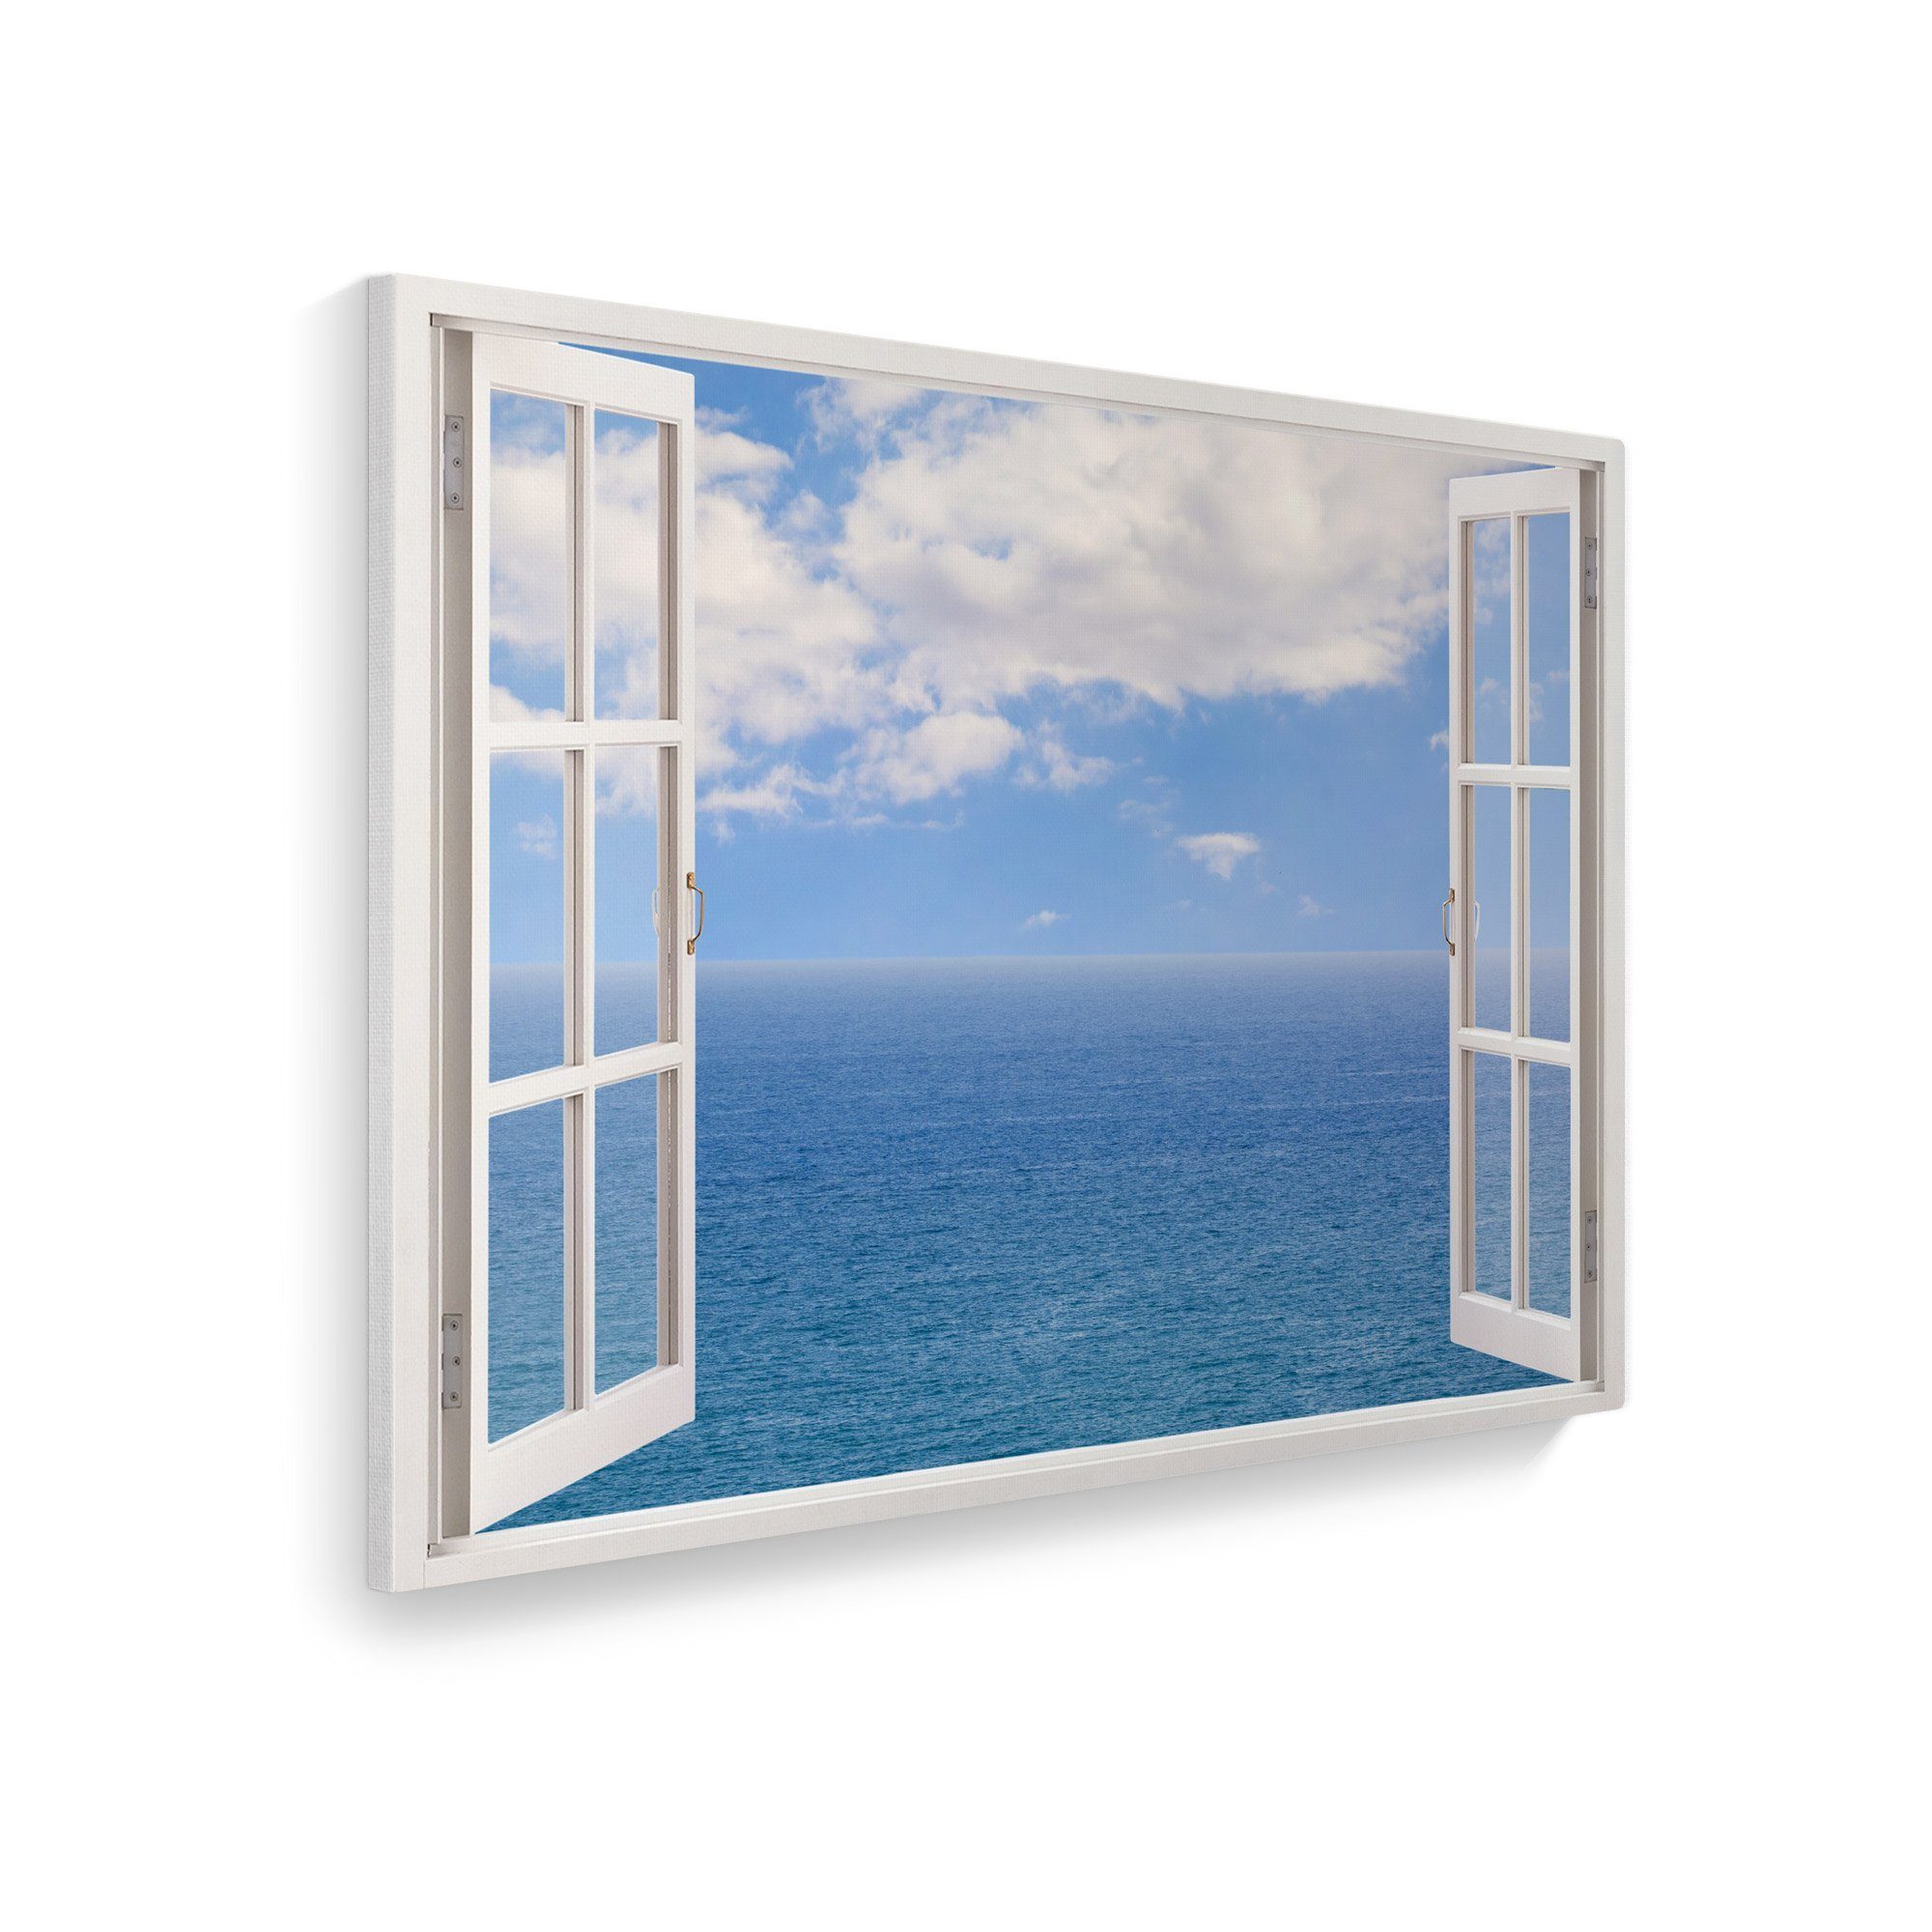 WallSpirit Leinwandbild "Fenster mit Aussicht", Meer mit Wolken, Leinwandbild geeignet für alle Wohnbereiche